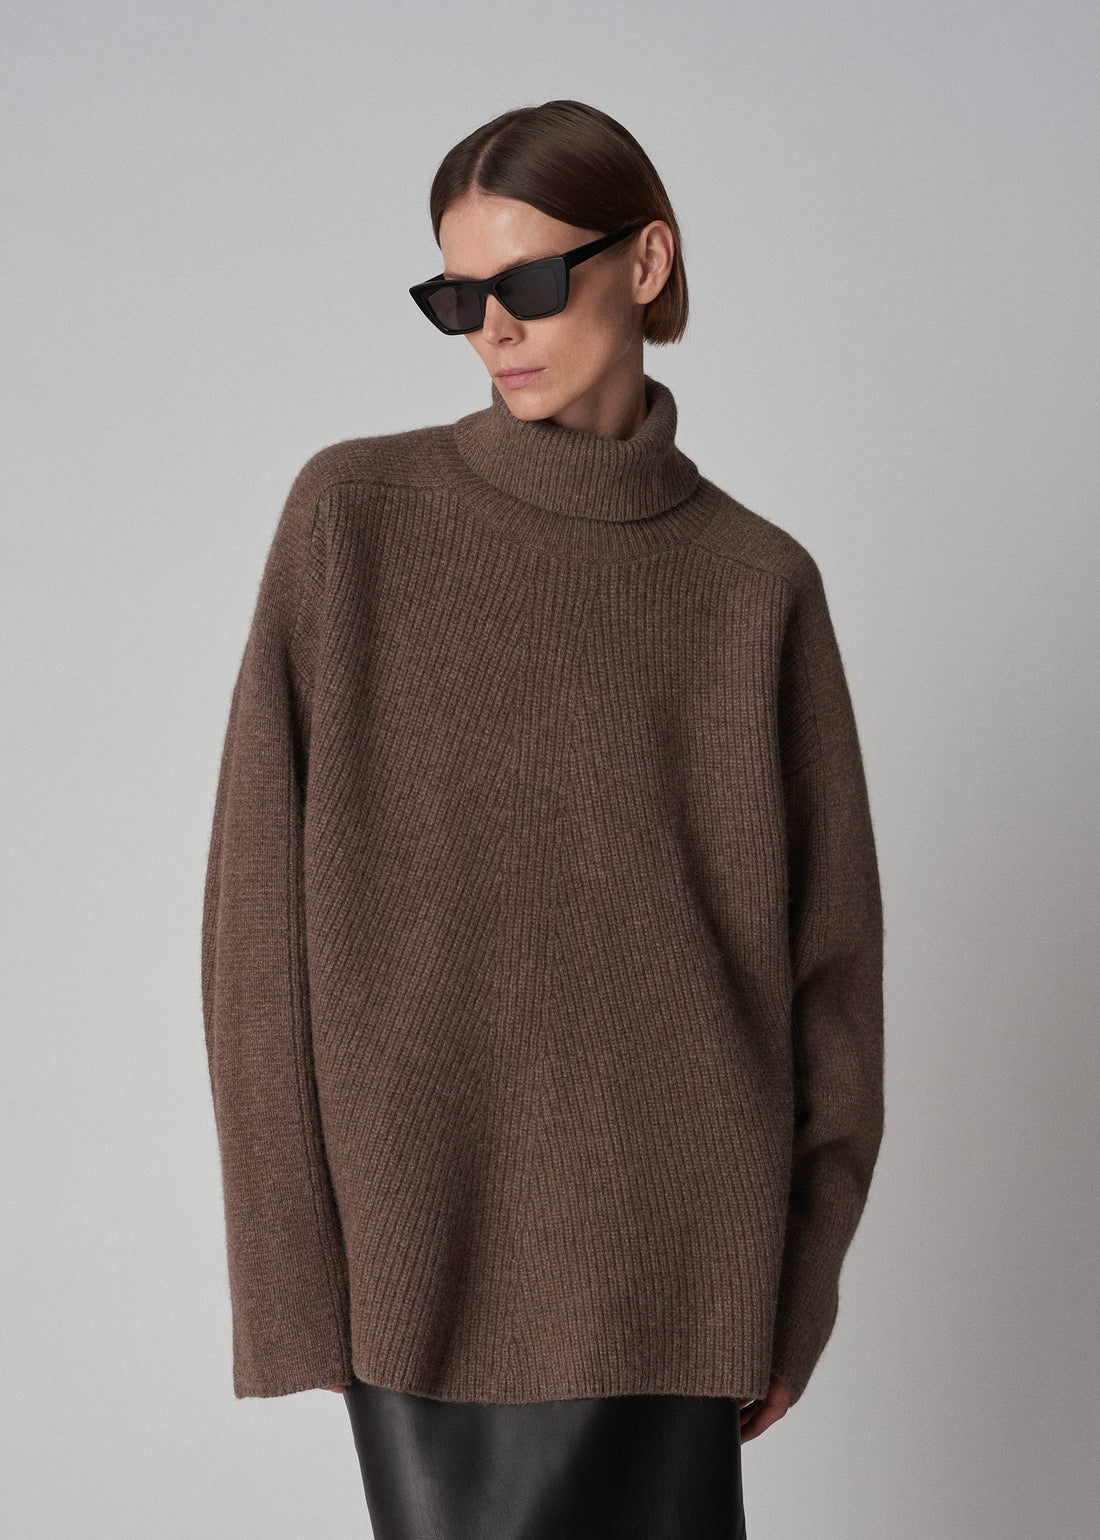 CO Oversized Turtleneck Sweater in Wool